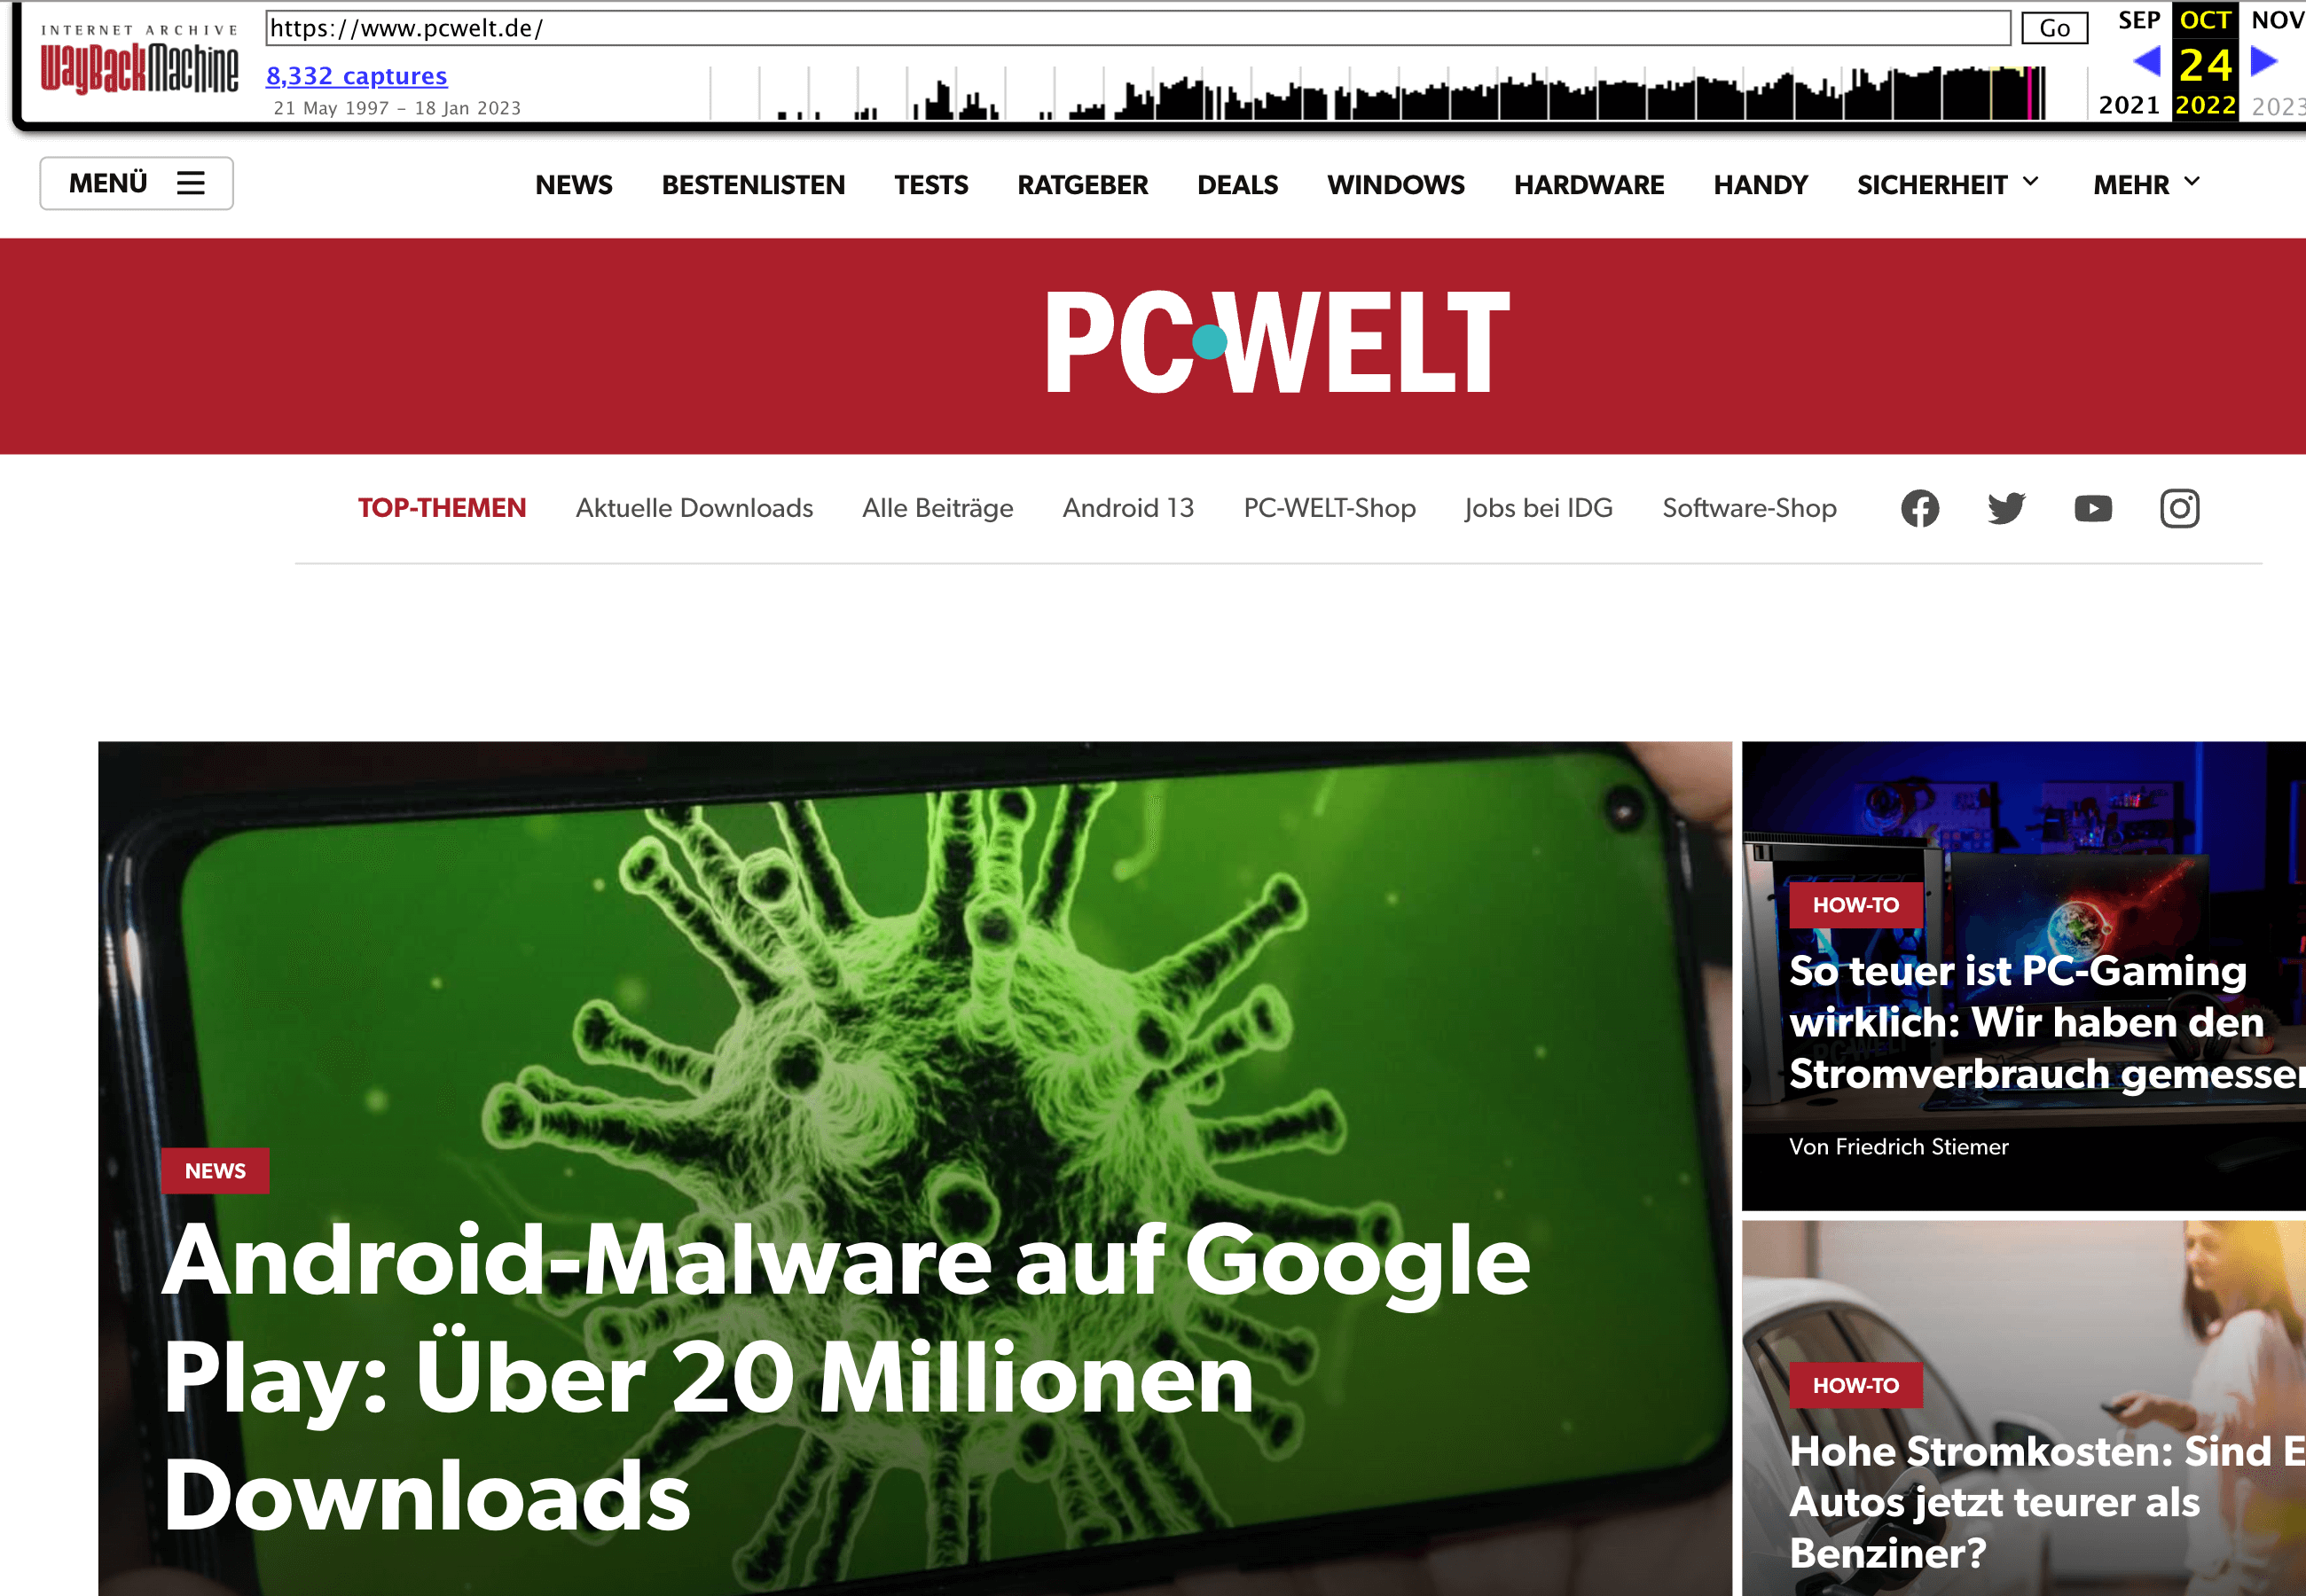 Das neue Design der Homepage von pcwelt.de hat zum Beispiel nun eher rote Farben, Artikel als Kacheln dargestellt und anderen Menüpunkte im Header.